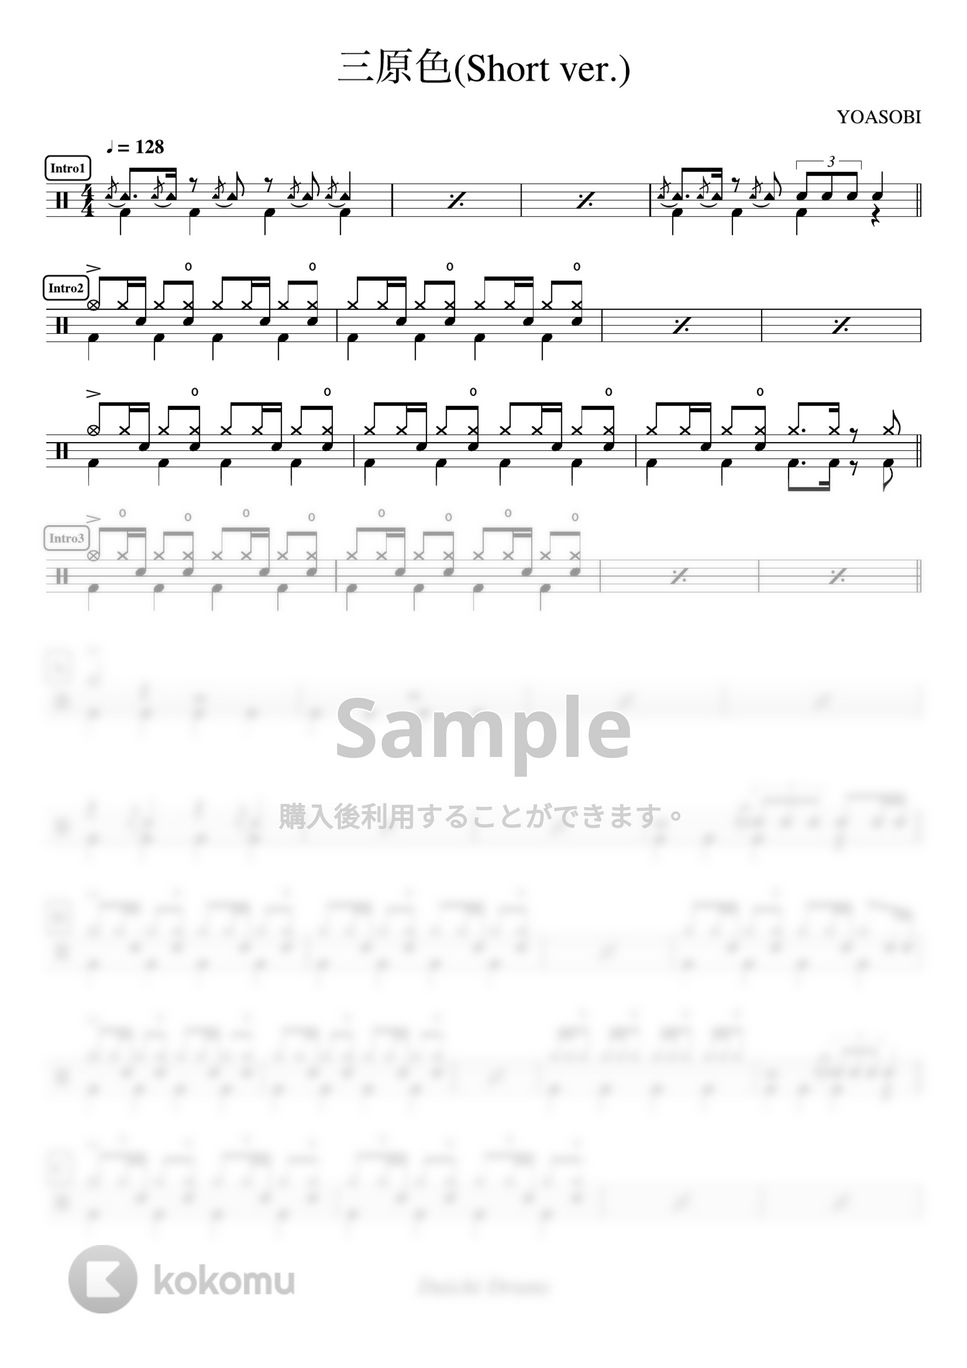 YOASOBI - 三原色(Short ver.) by Daichi Drums